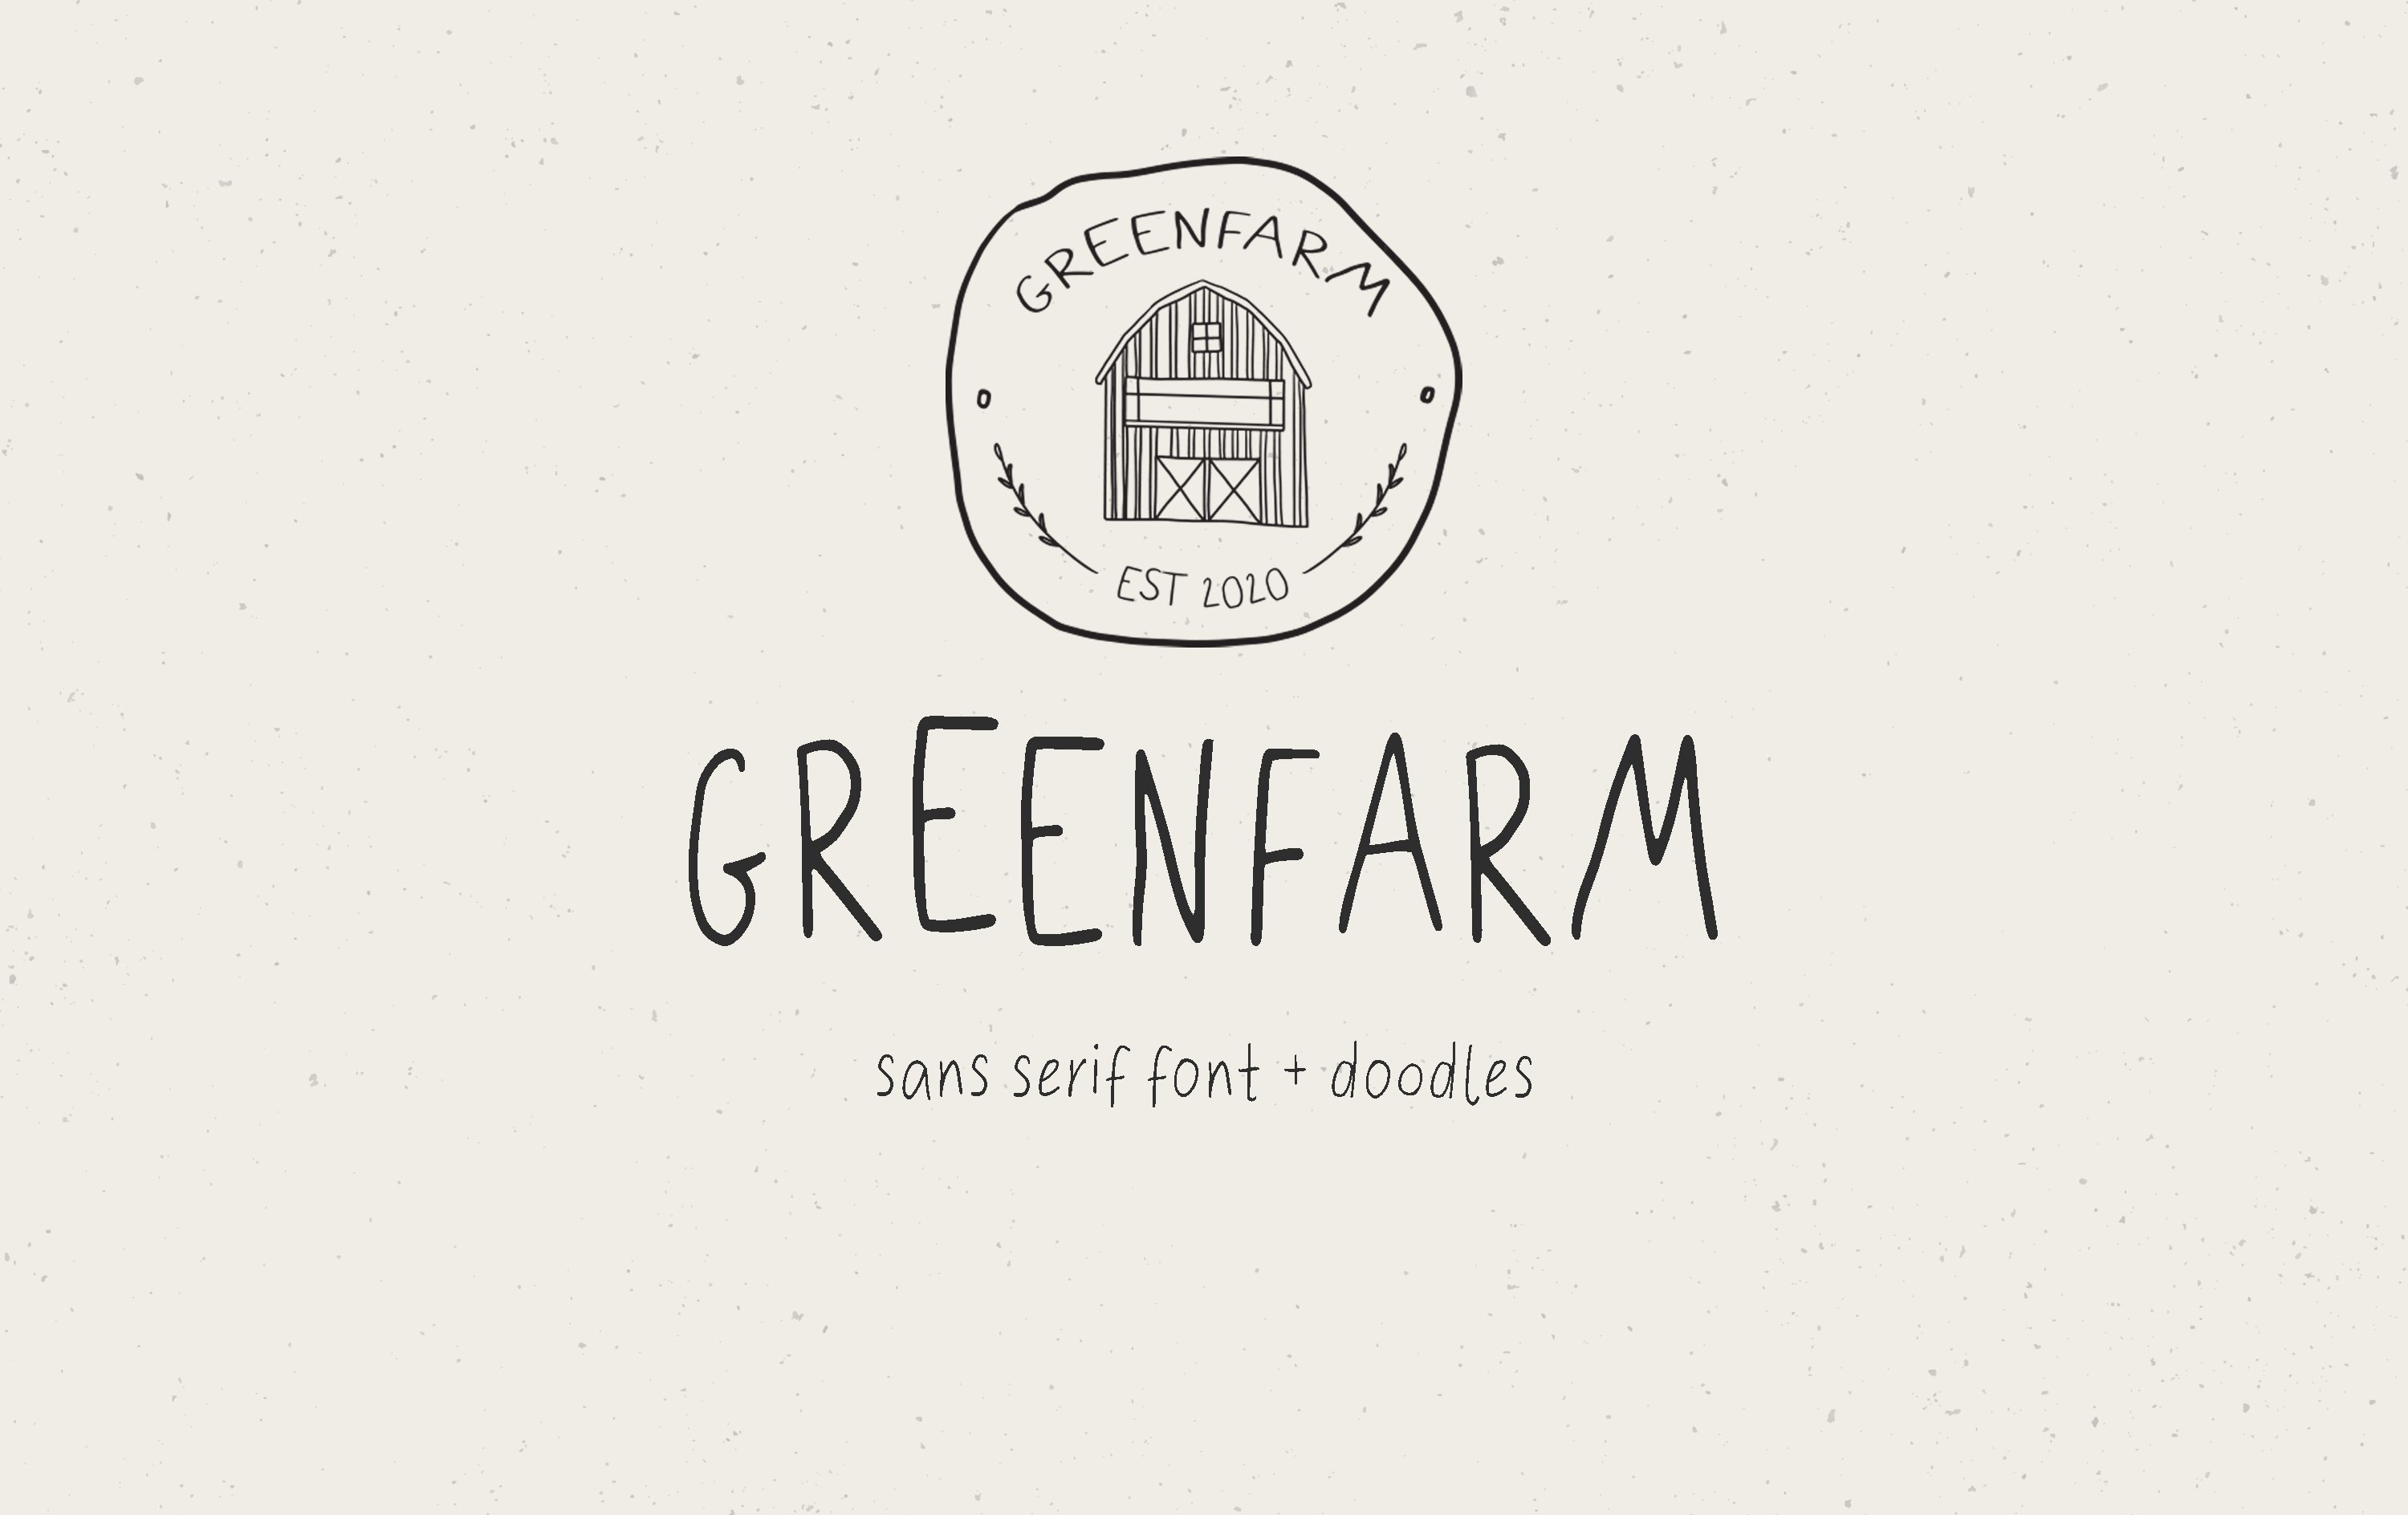 Greenfarm Rustic Font Logos Doodles cover image.